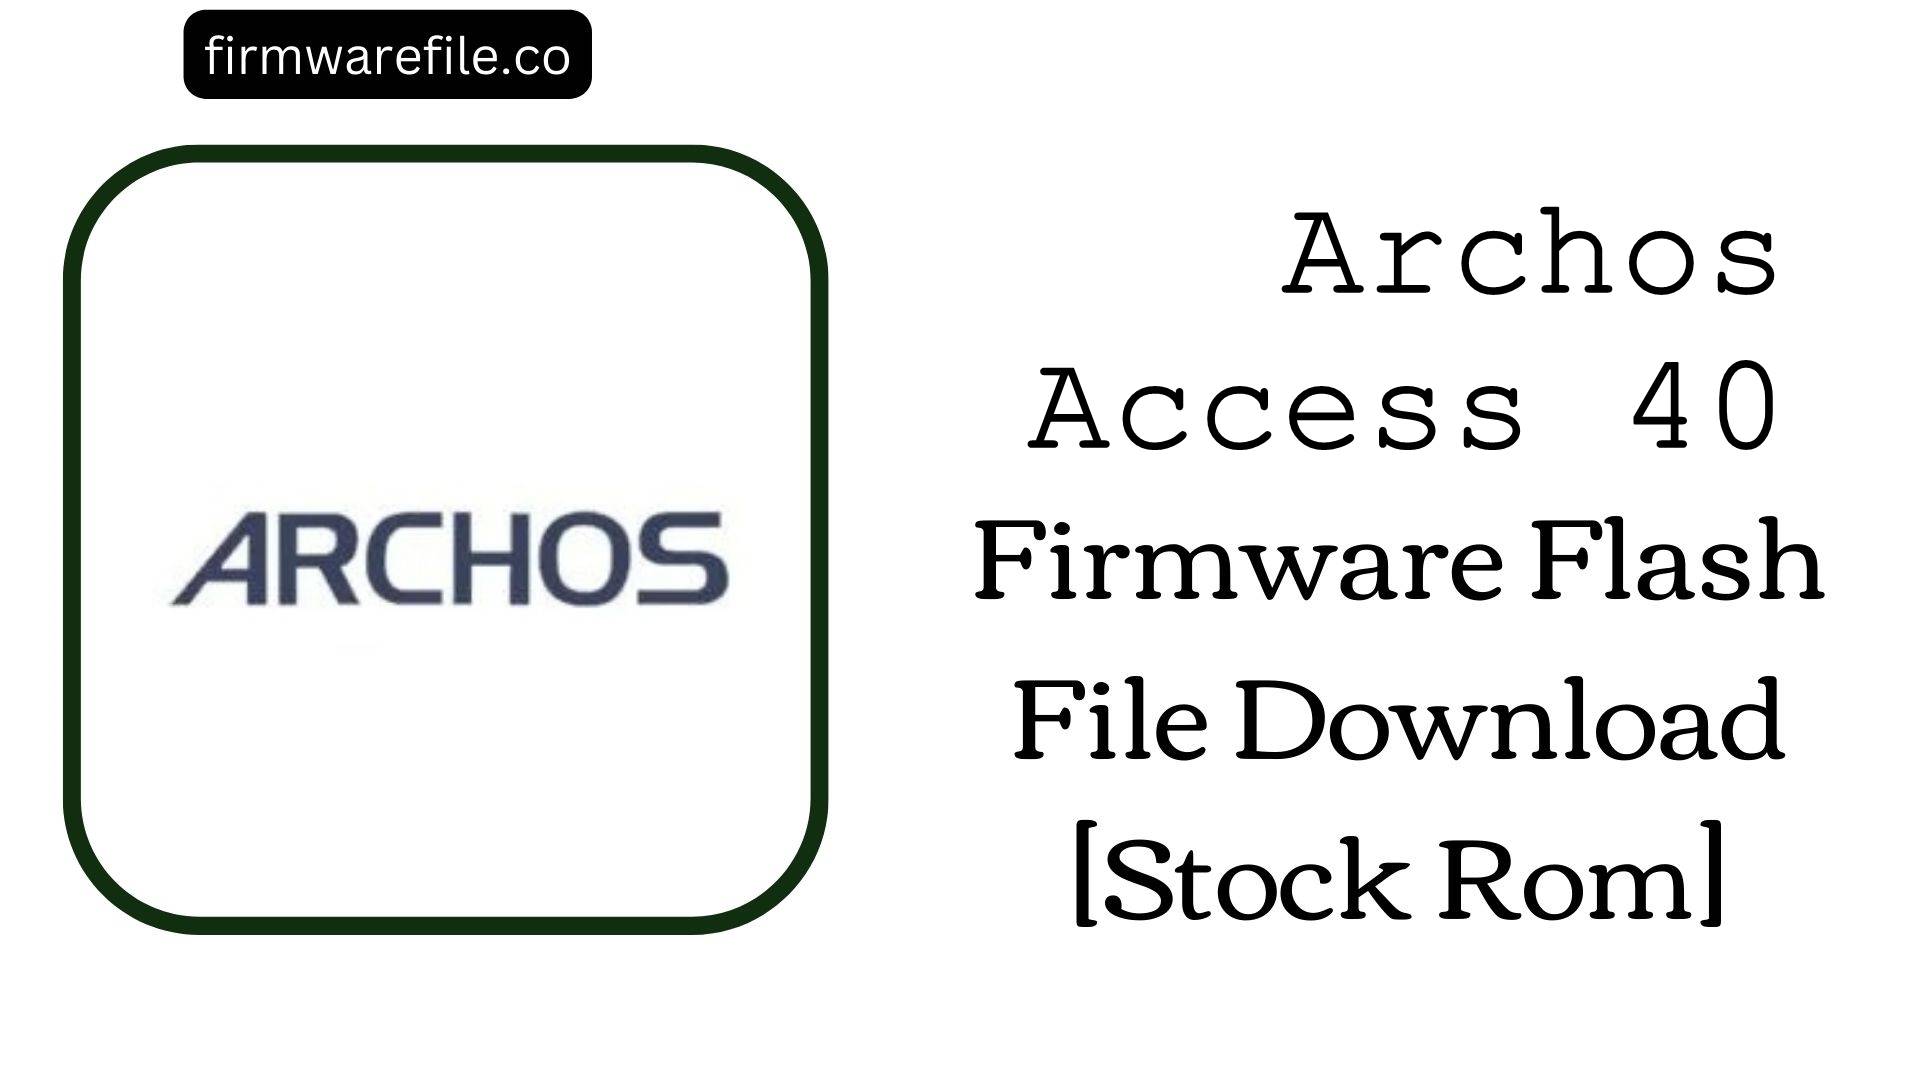 Archos Access 40